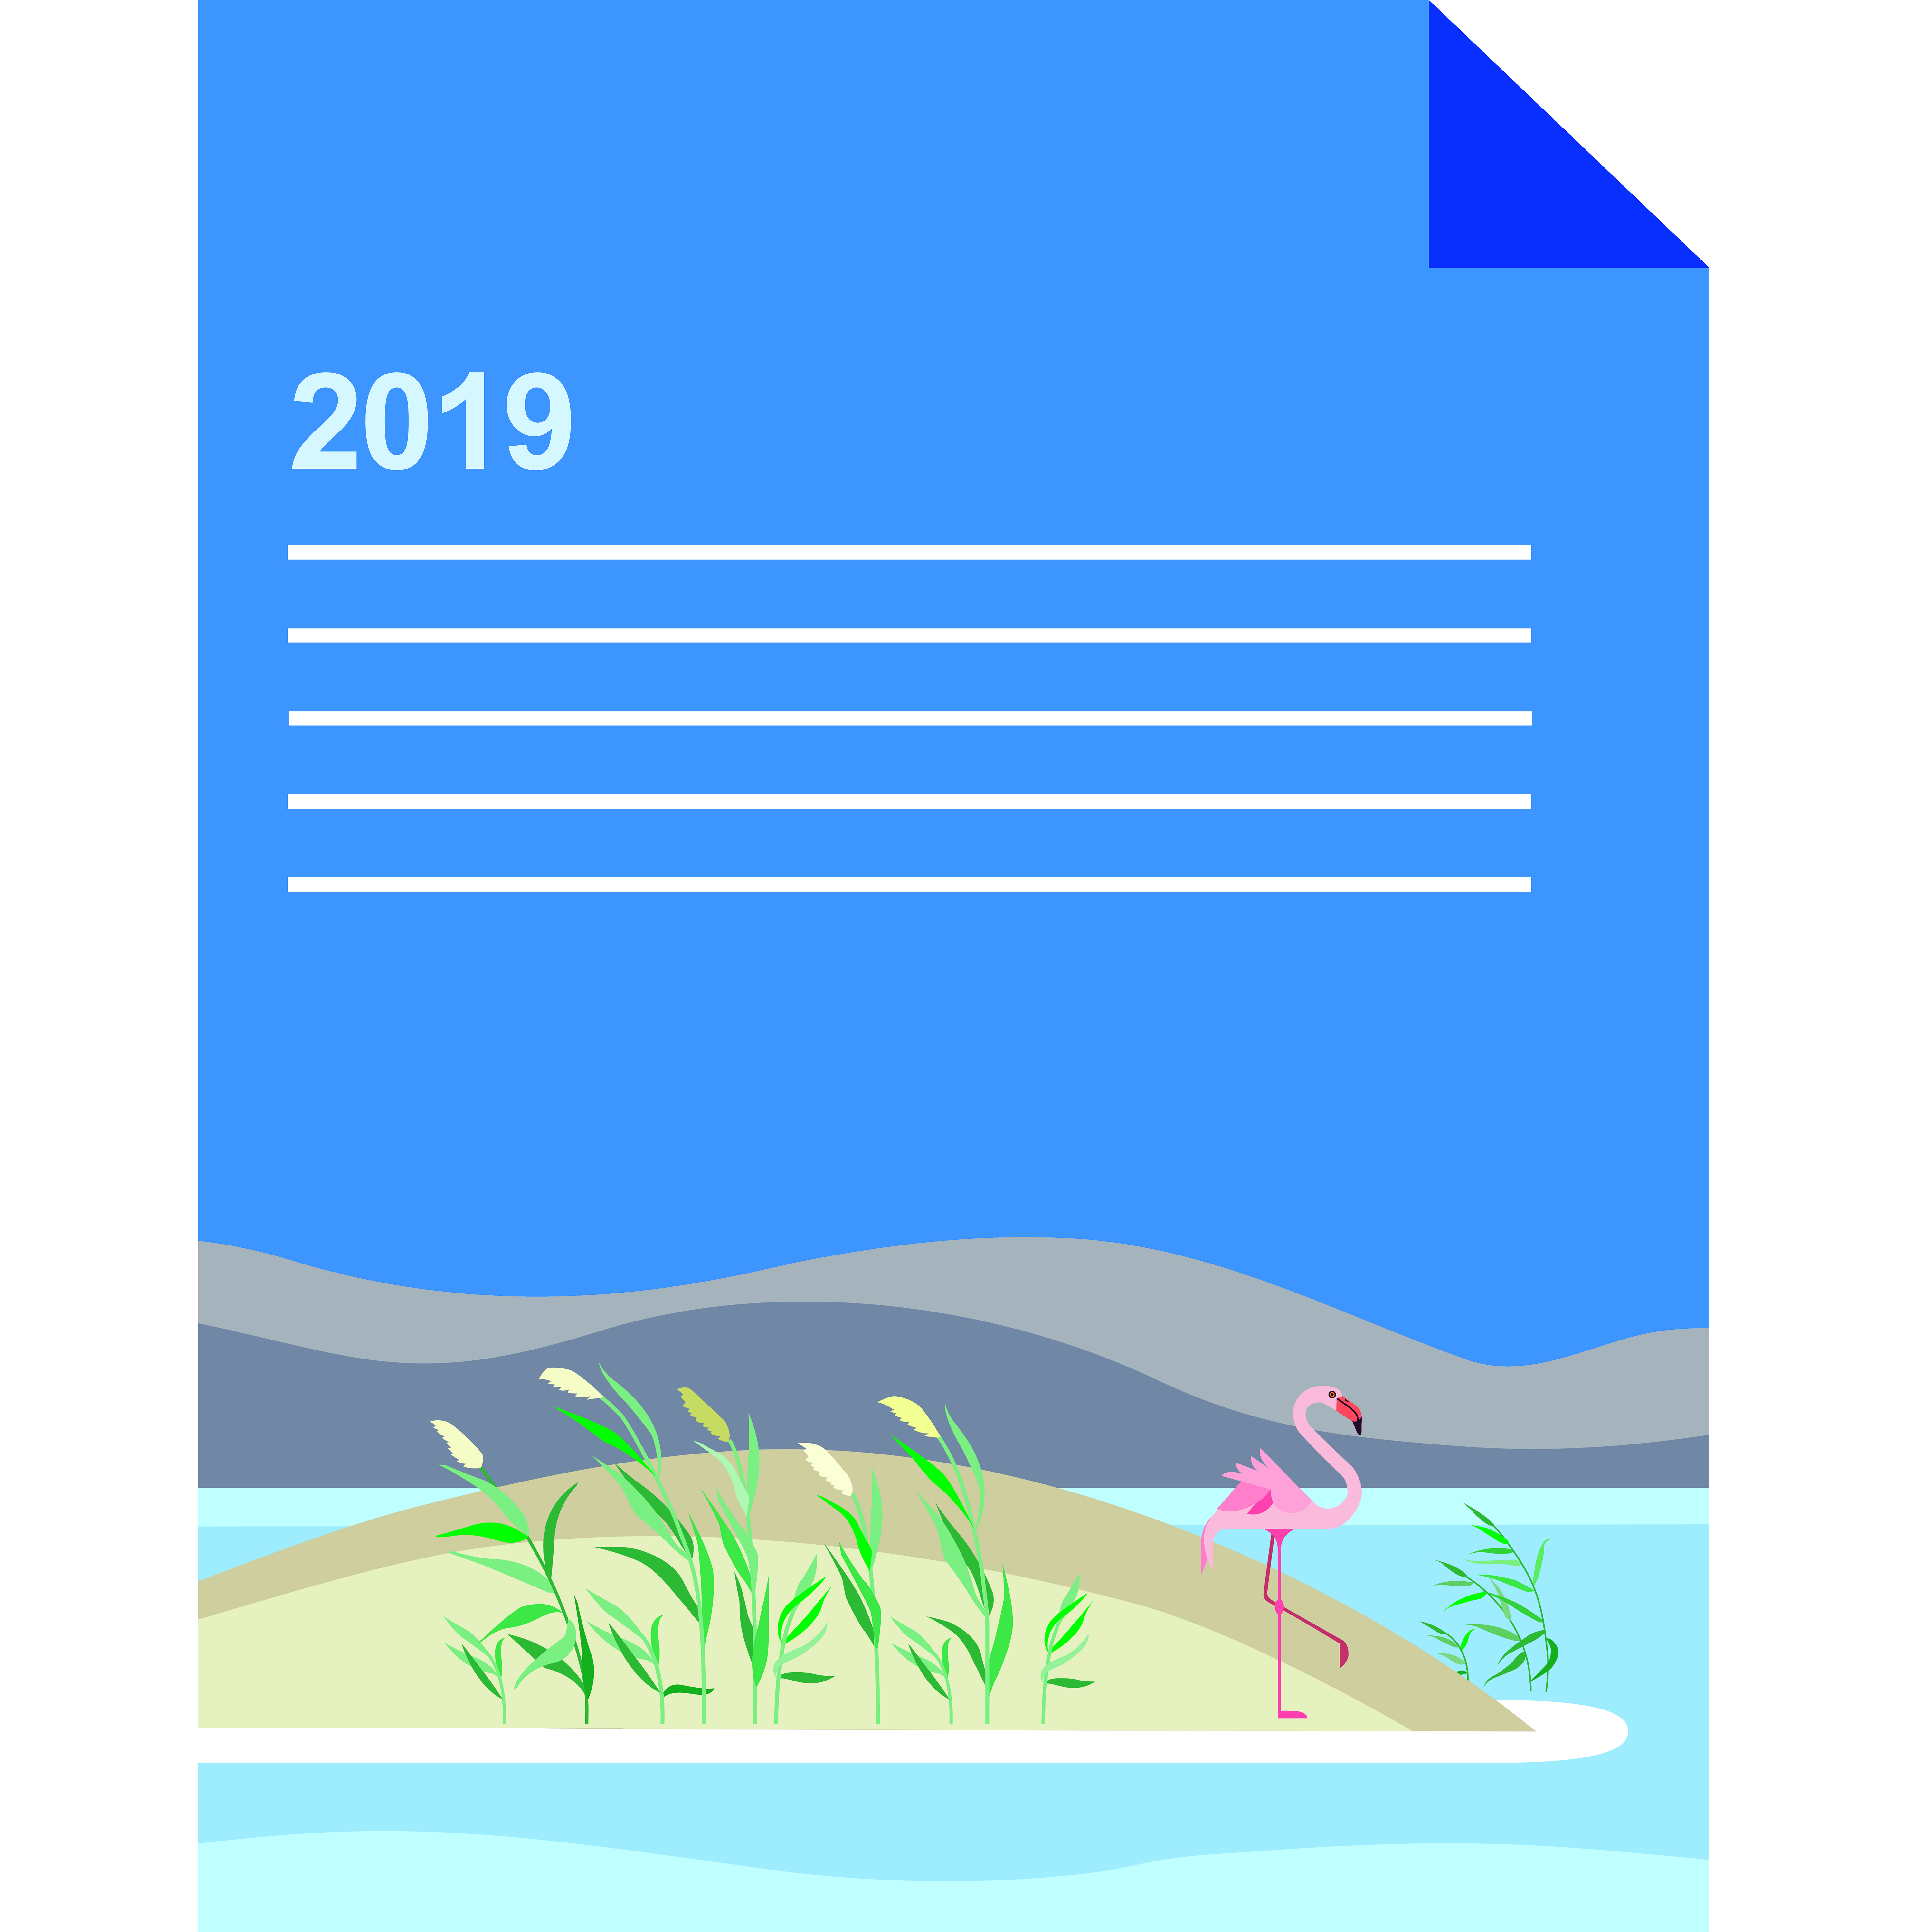 گزارش سالانه طرح در سال 2019